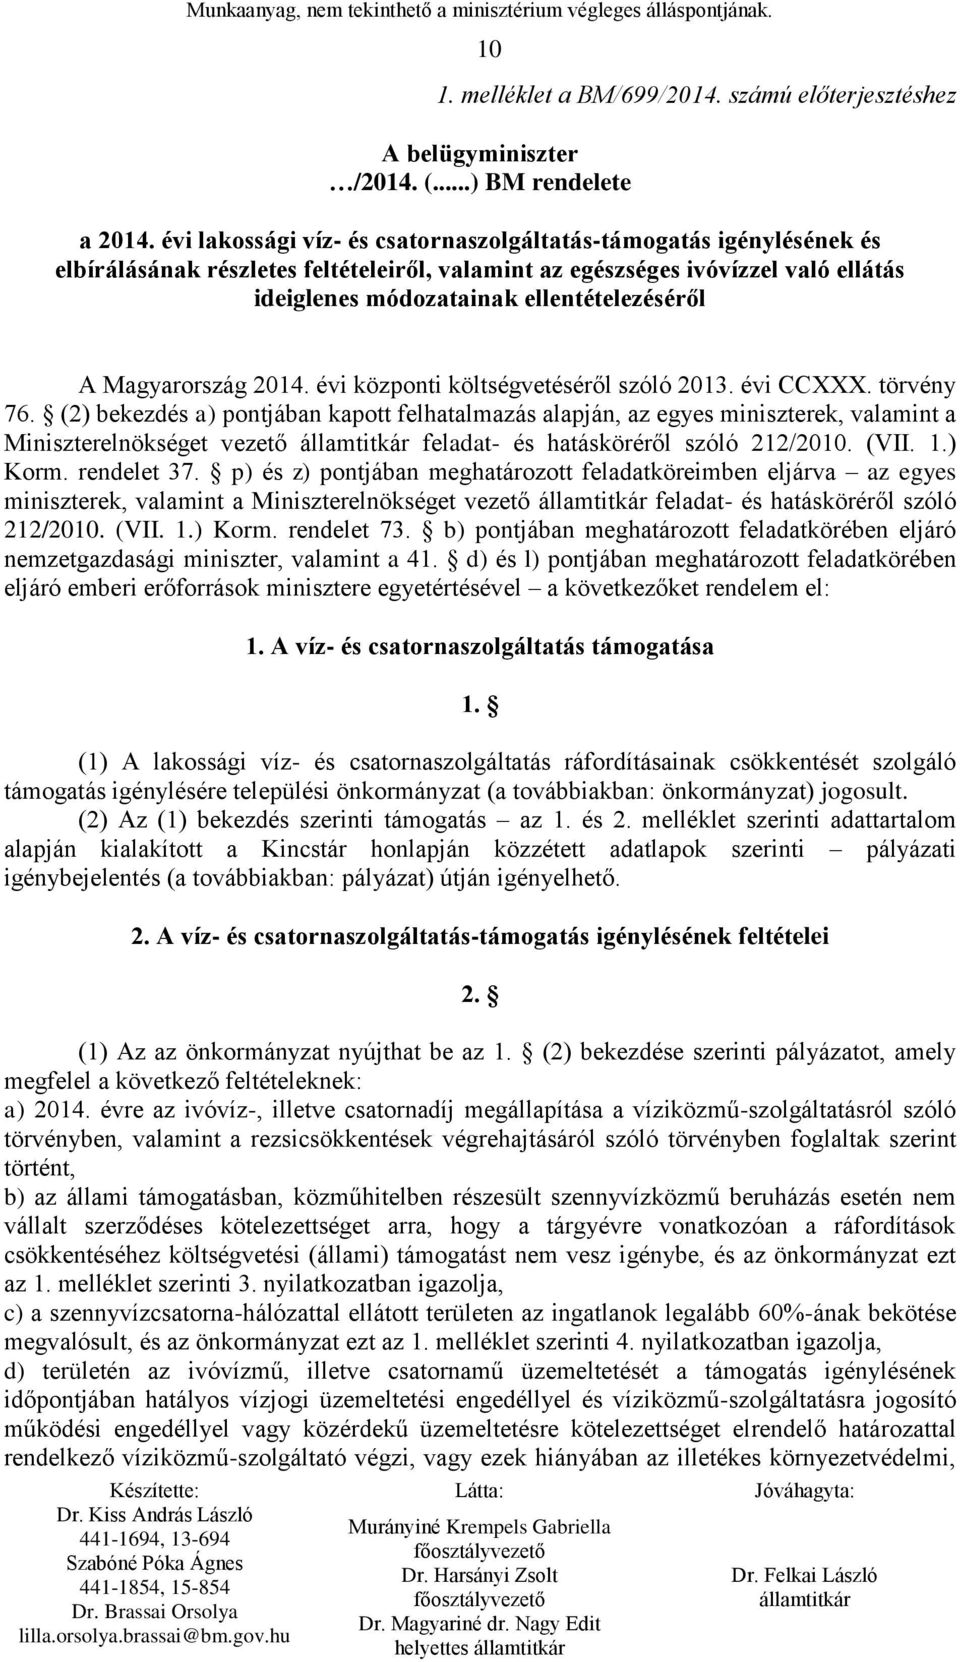 Magyarország 2014. évi központi költségvetéséről szóló 2013. évi CCXXX. törvény 76.